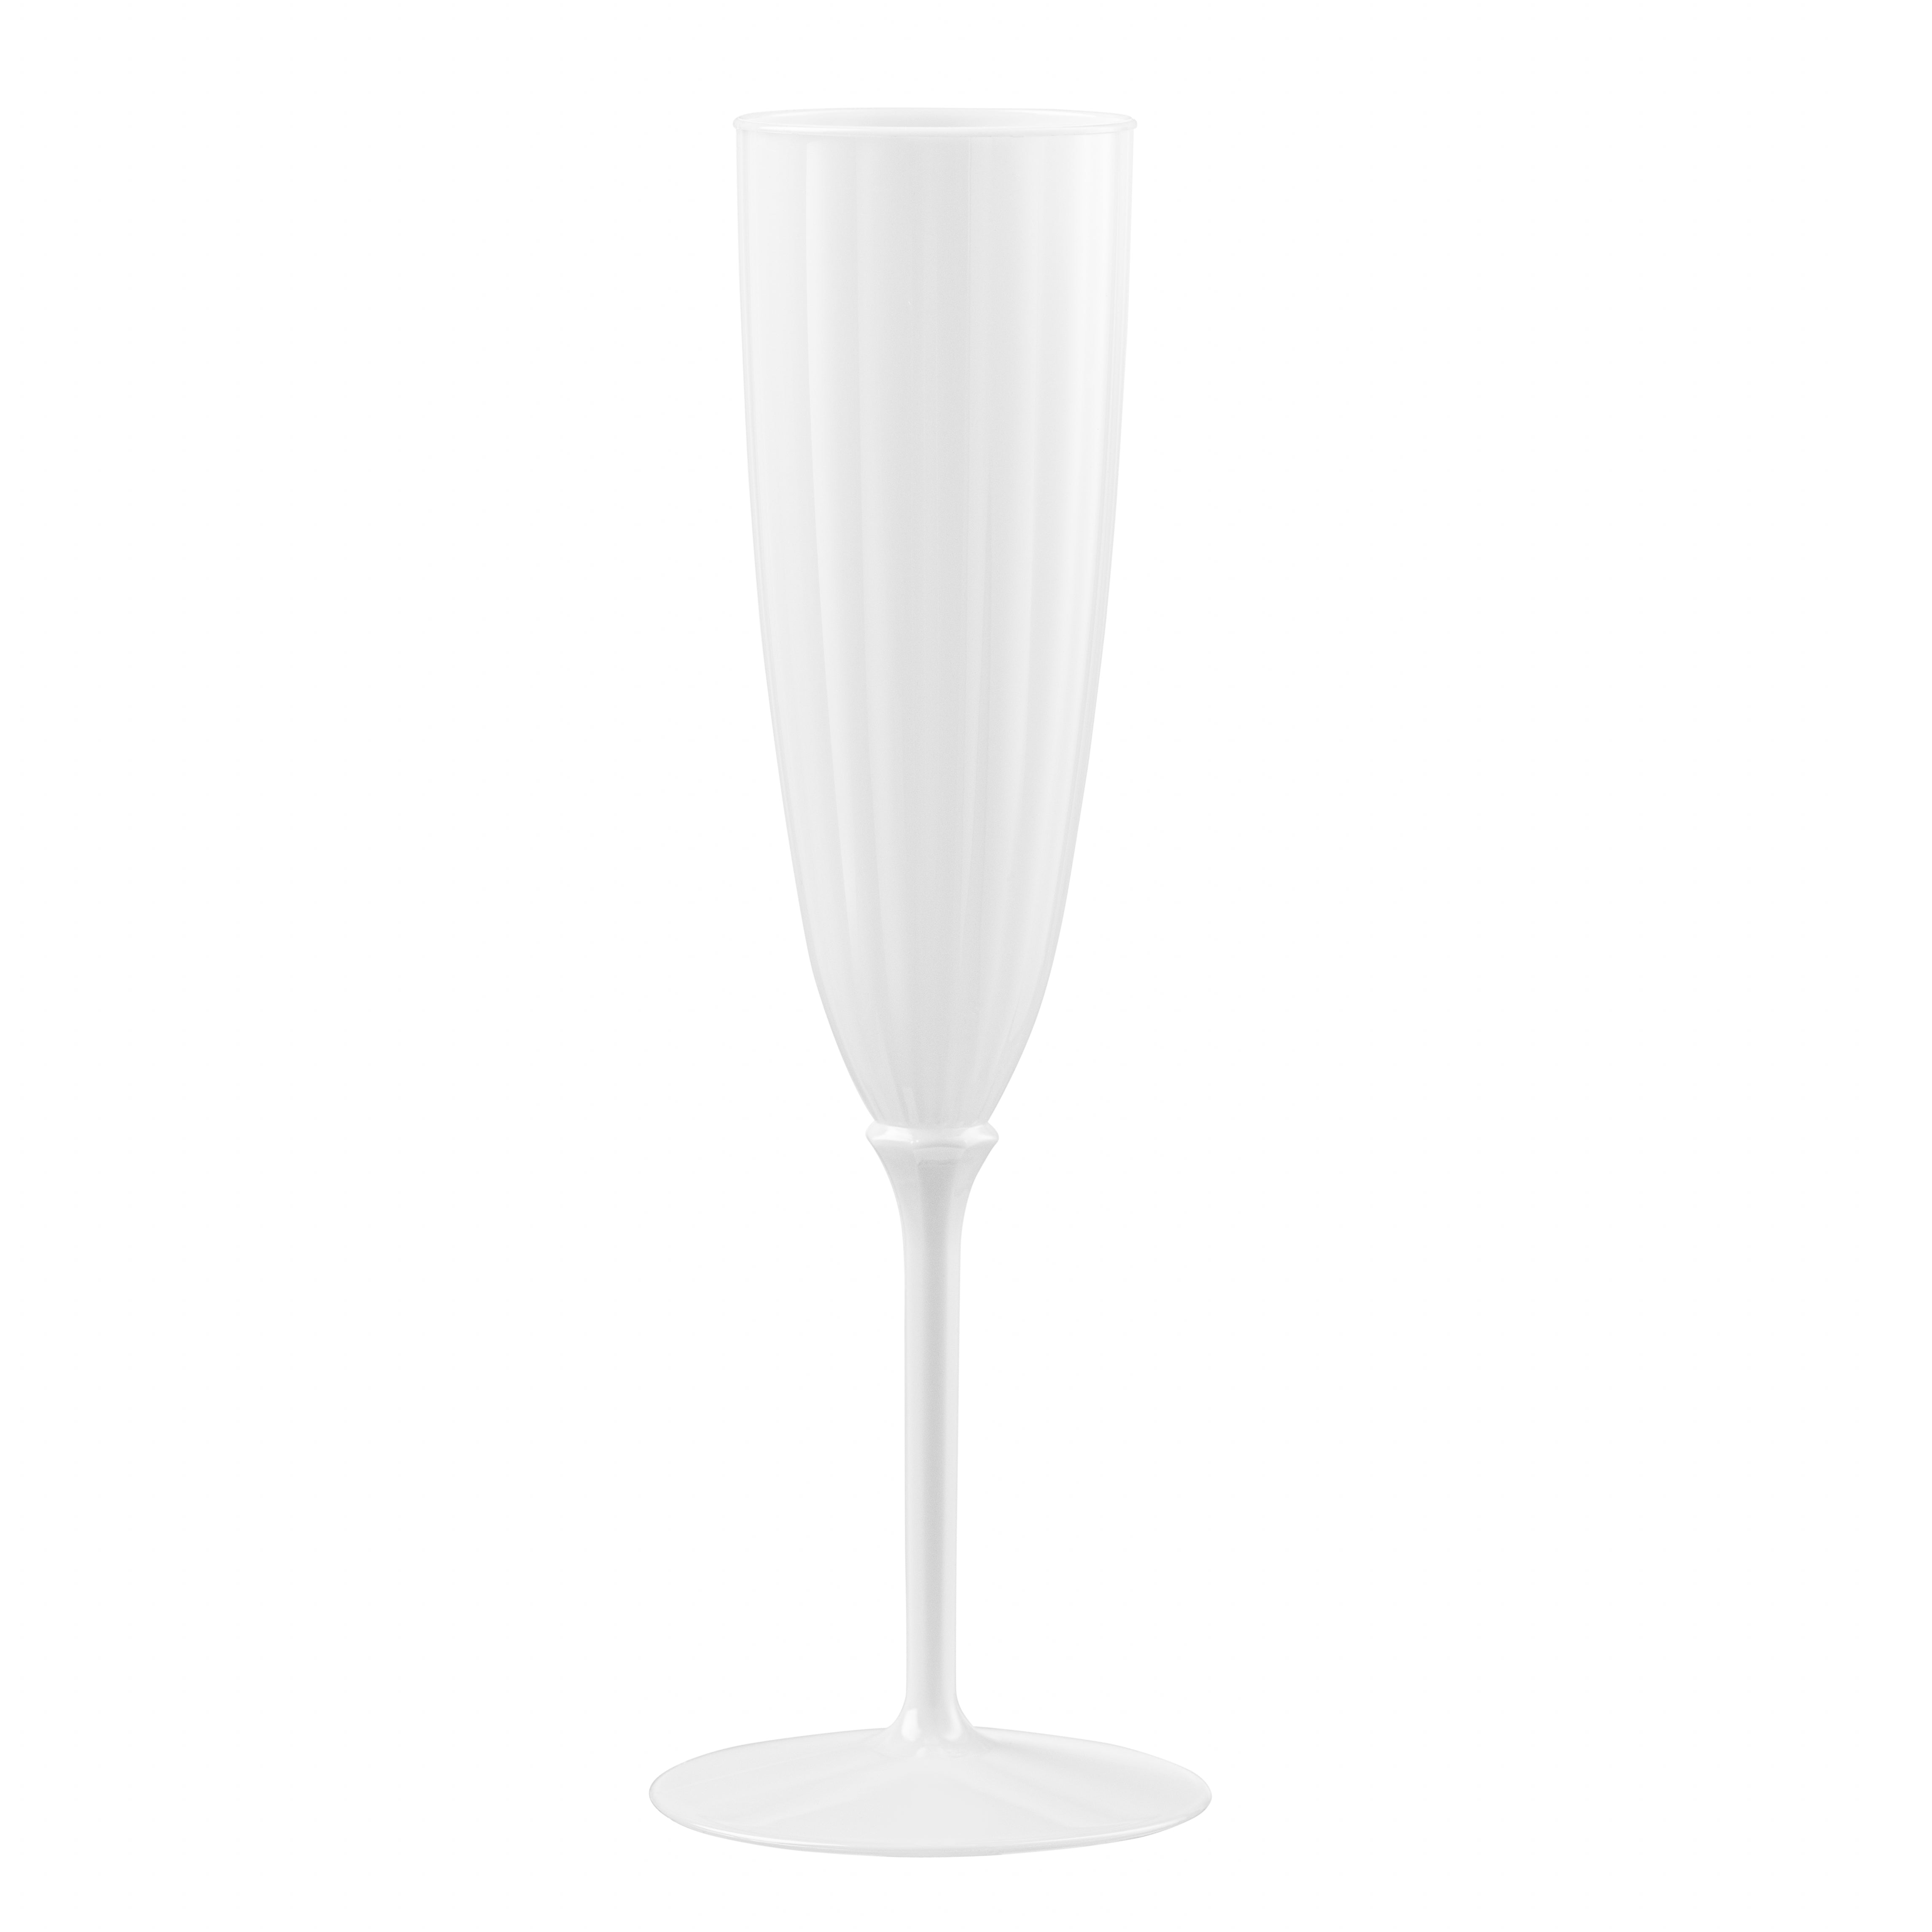 Gold Glitter Disposable Plastic Wine Glasses Goblet 7 oz